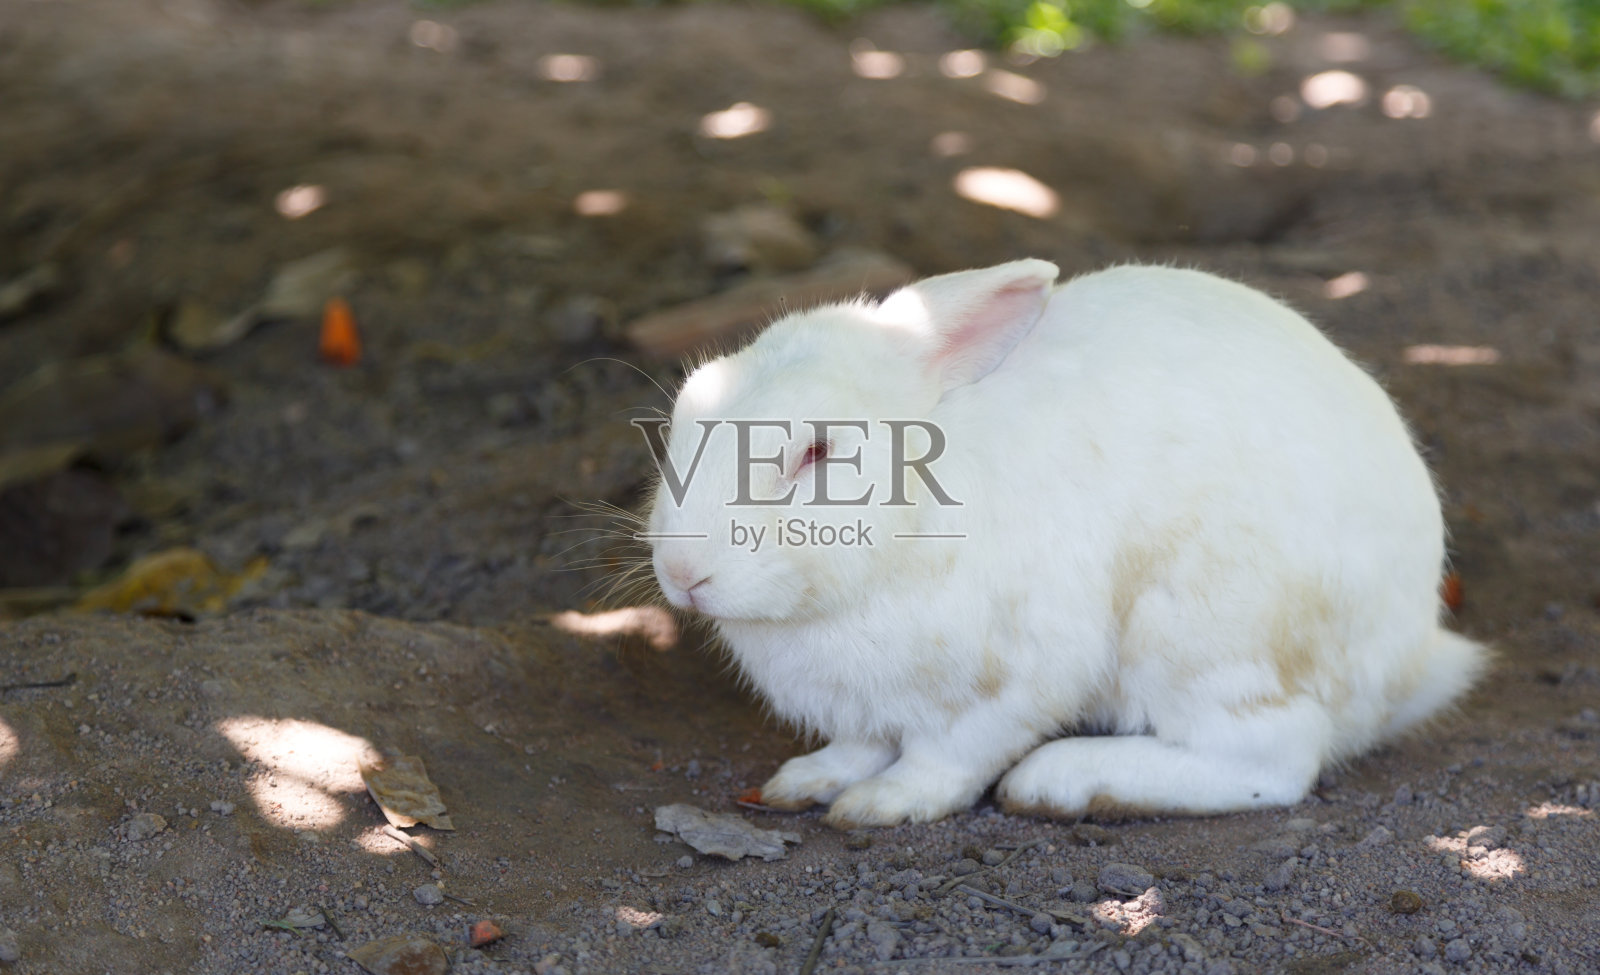 下午，小白兔在花园里休息照片摄影图片